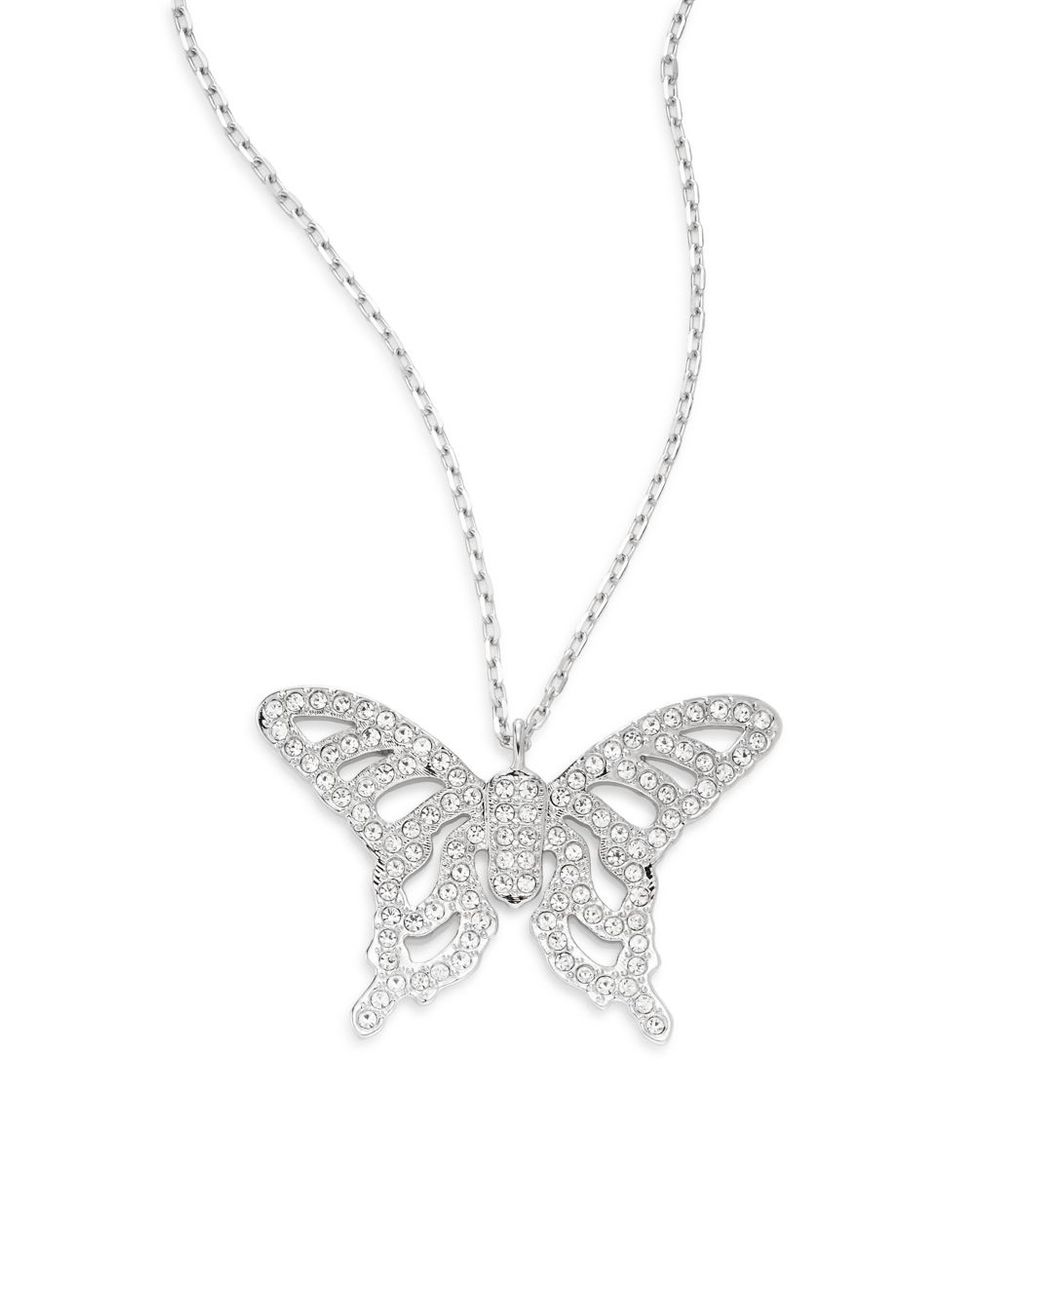 Swarovski Aliza Crystal Gold Butterfly Pendant Necklace Boxed | eBay